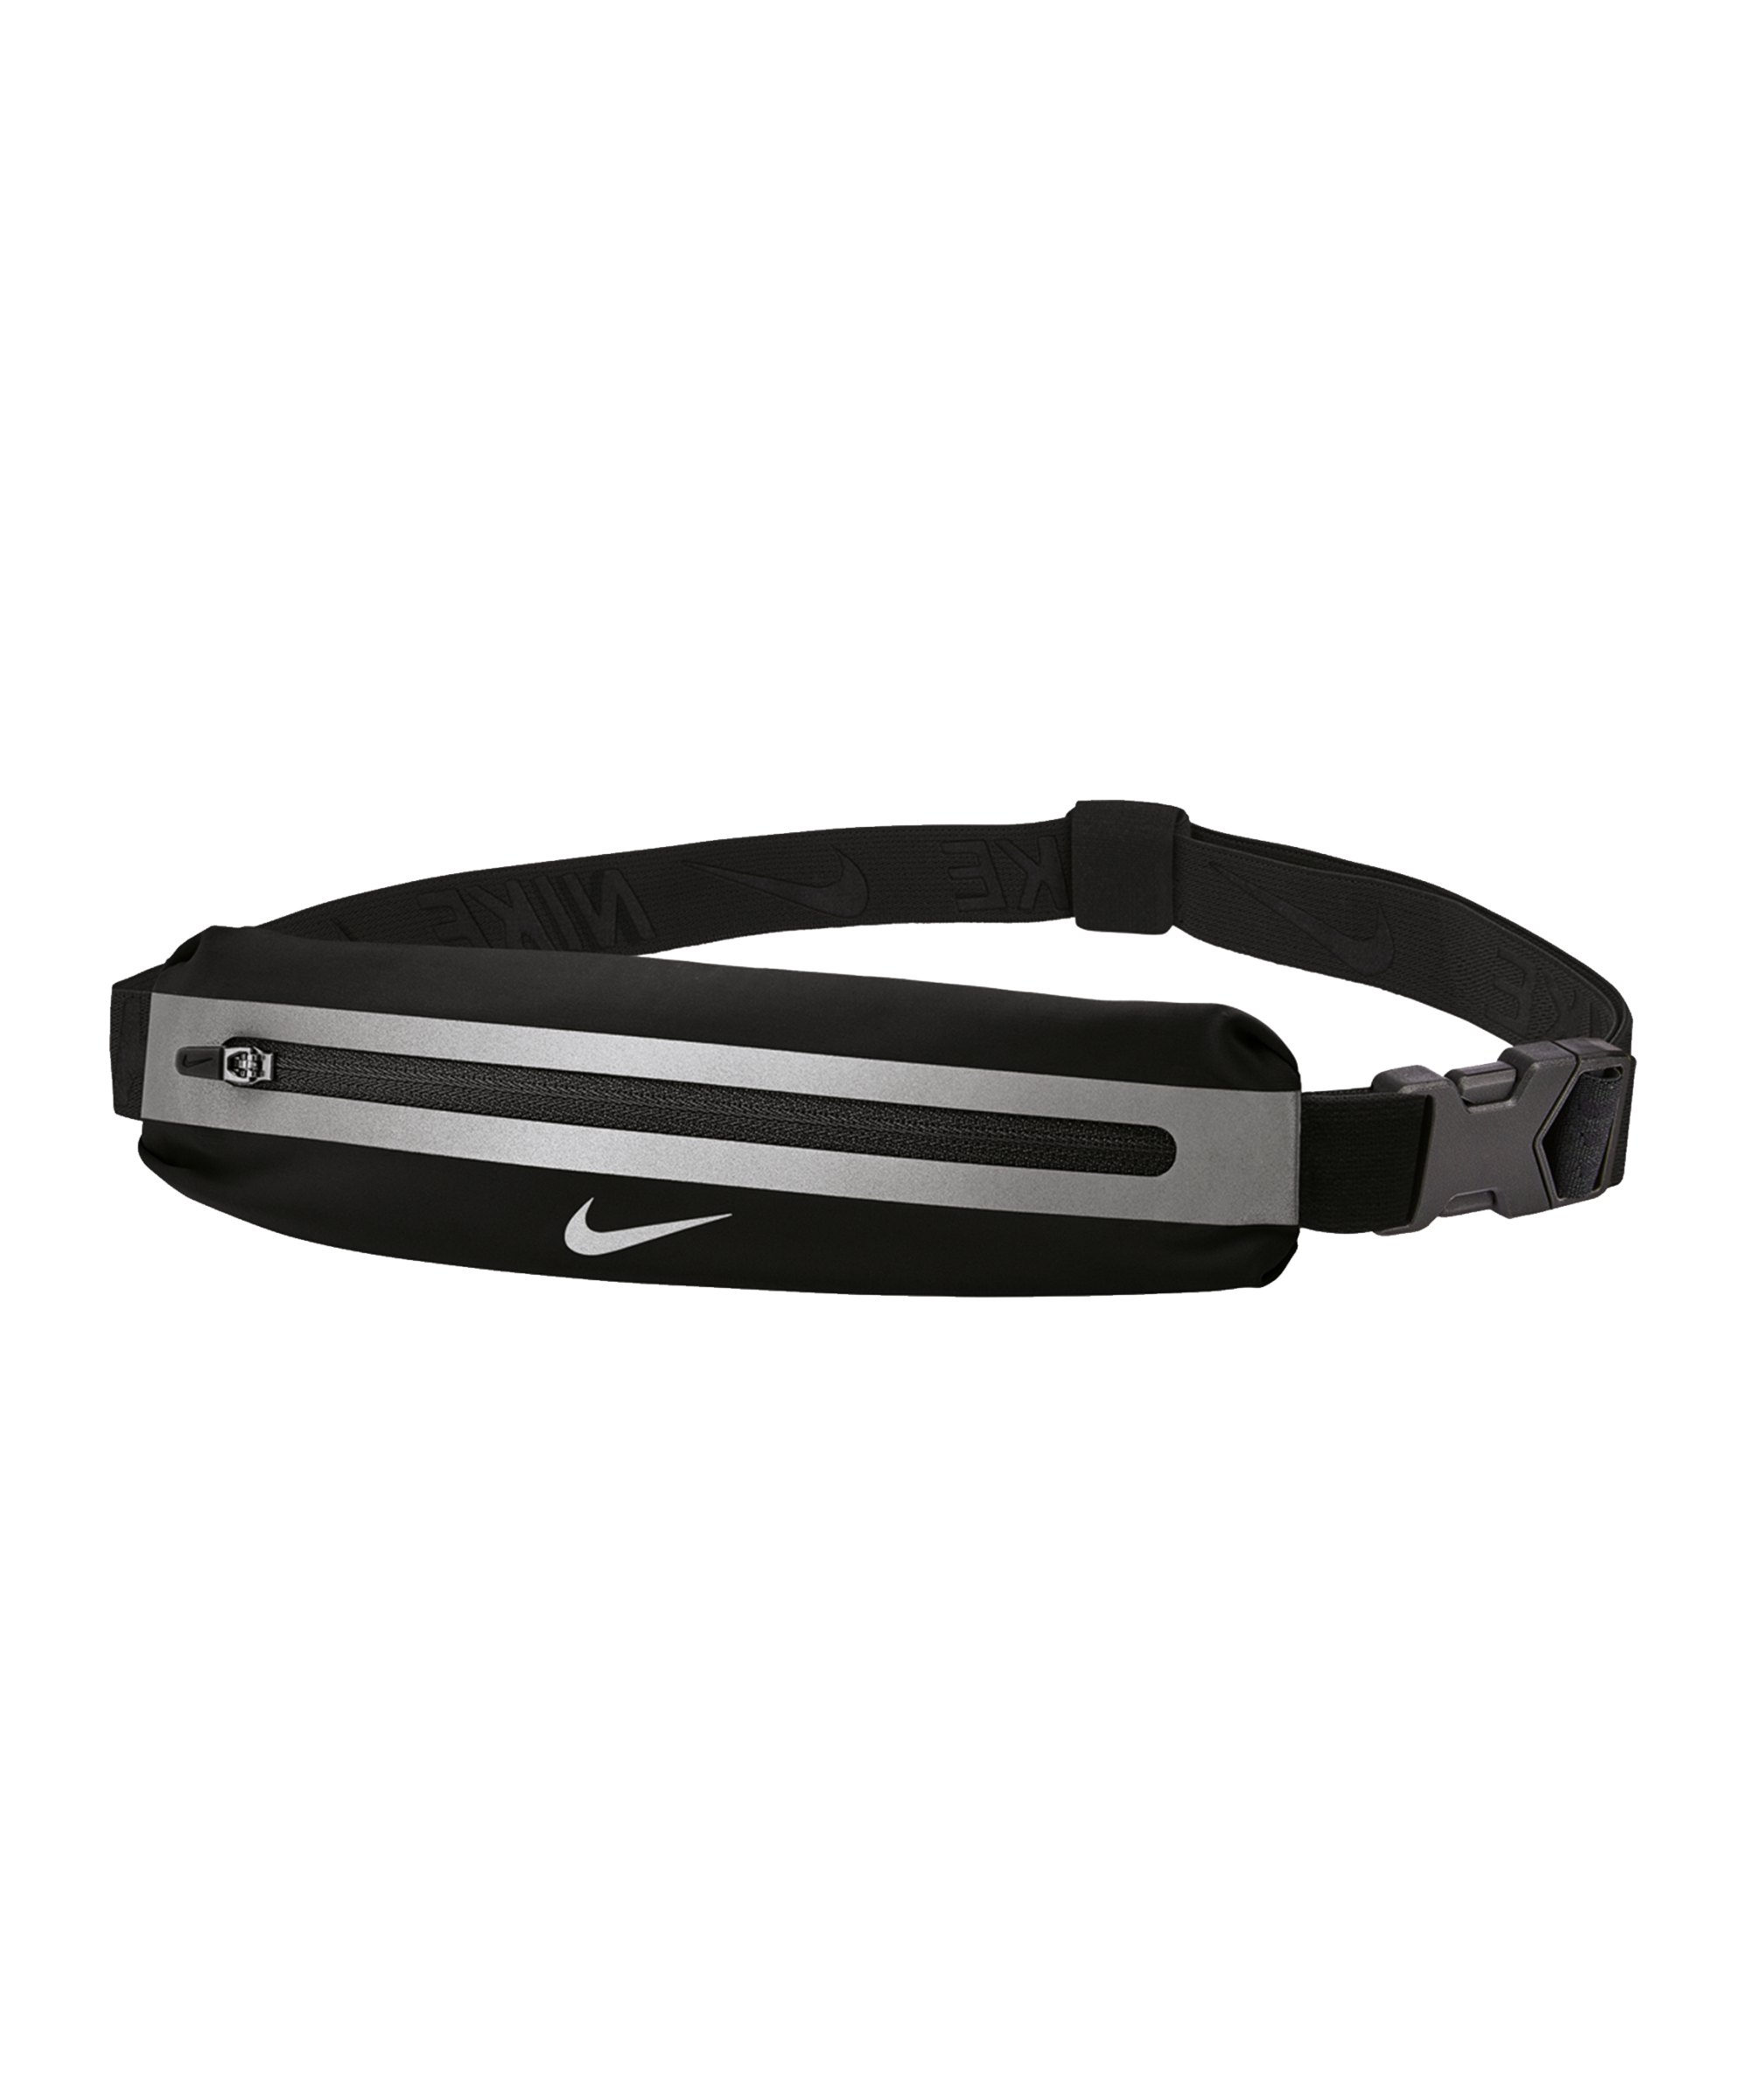 Nike Slim Hüfttasche 3.0 Schwarz Silber F082 - schwarz